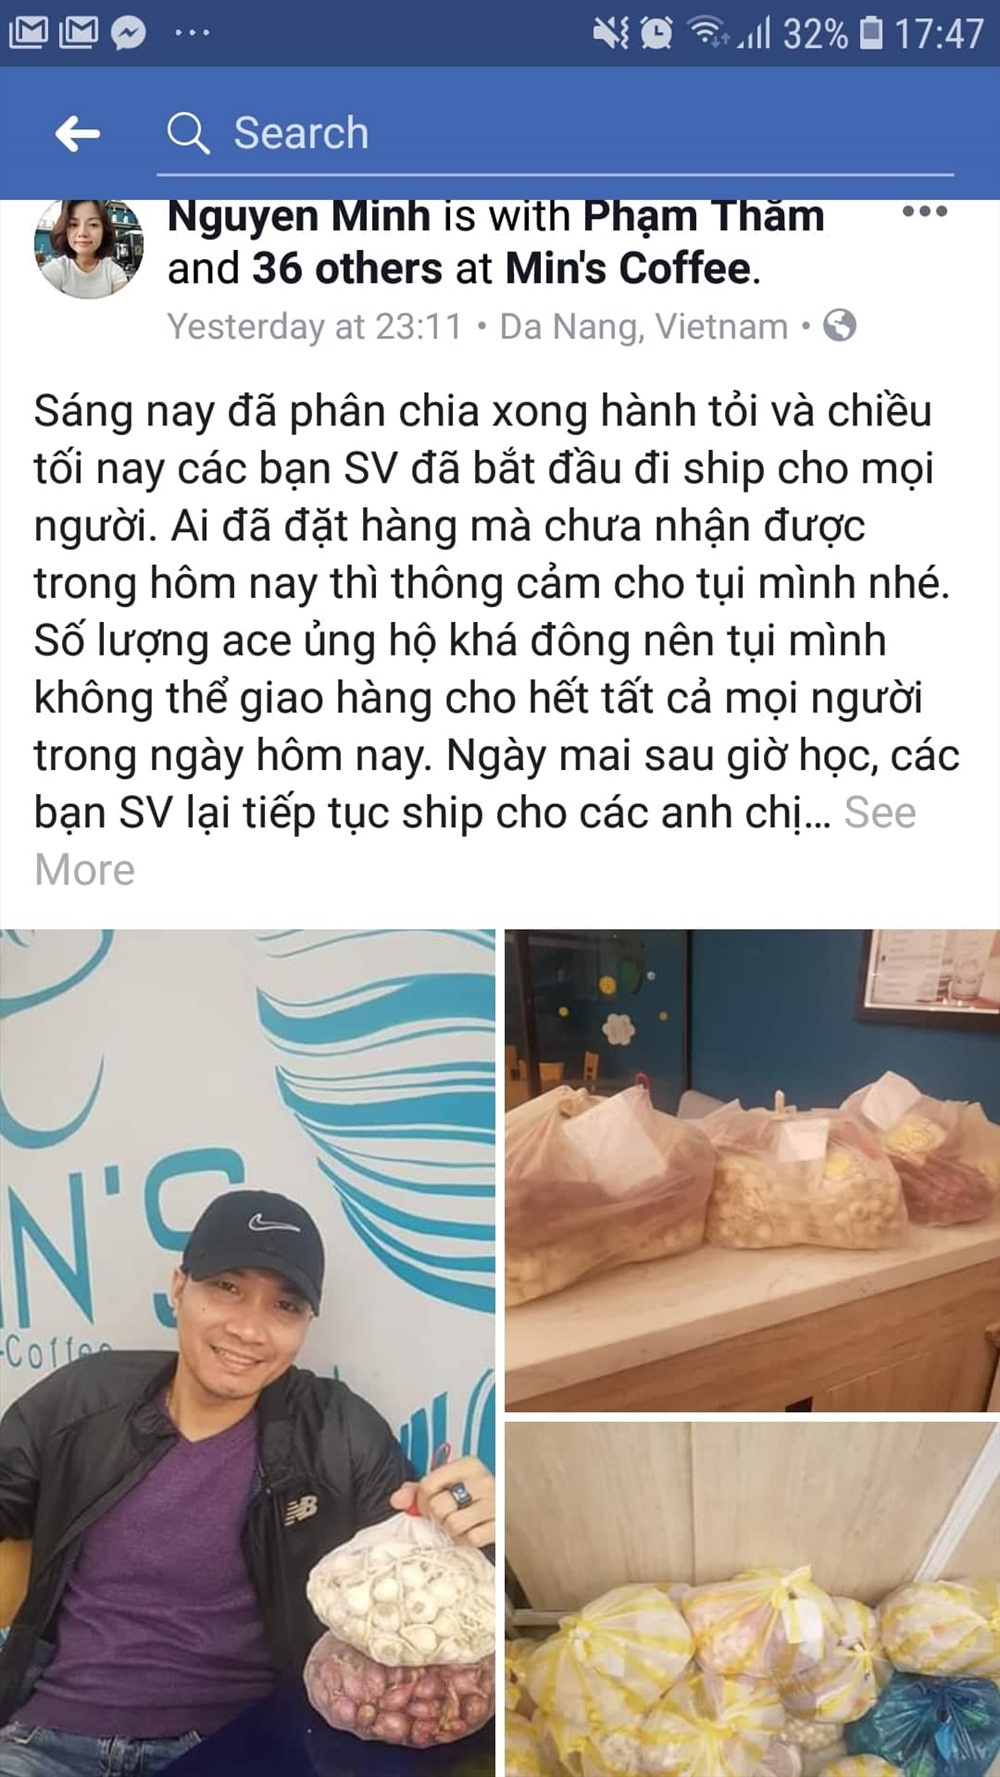 Anh Phạm Thắm nhận thu mua và tiêu thụ giúp bà con nông dân 10 tấn tỏi Lý Sơn. (Ảnh chụp từ FB)